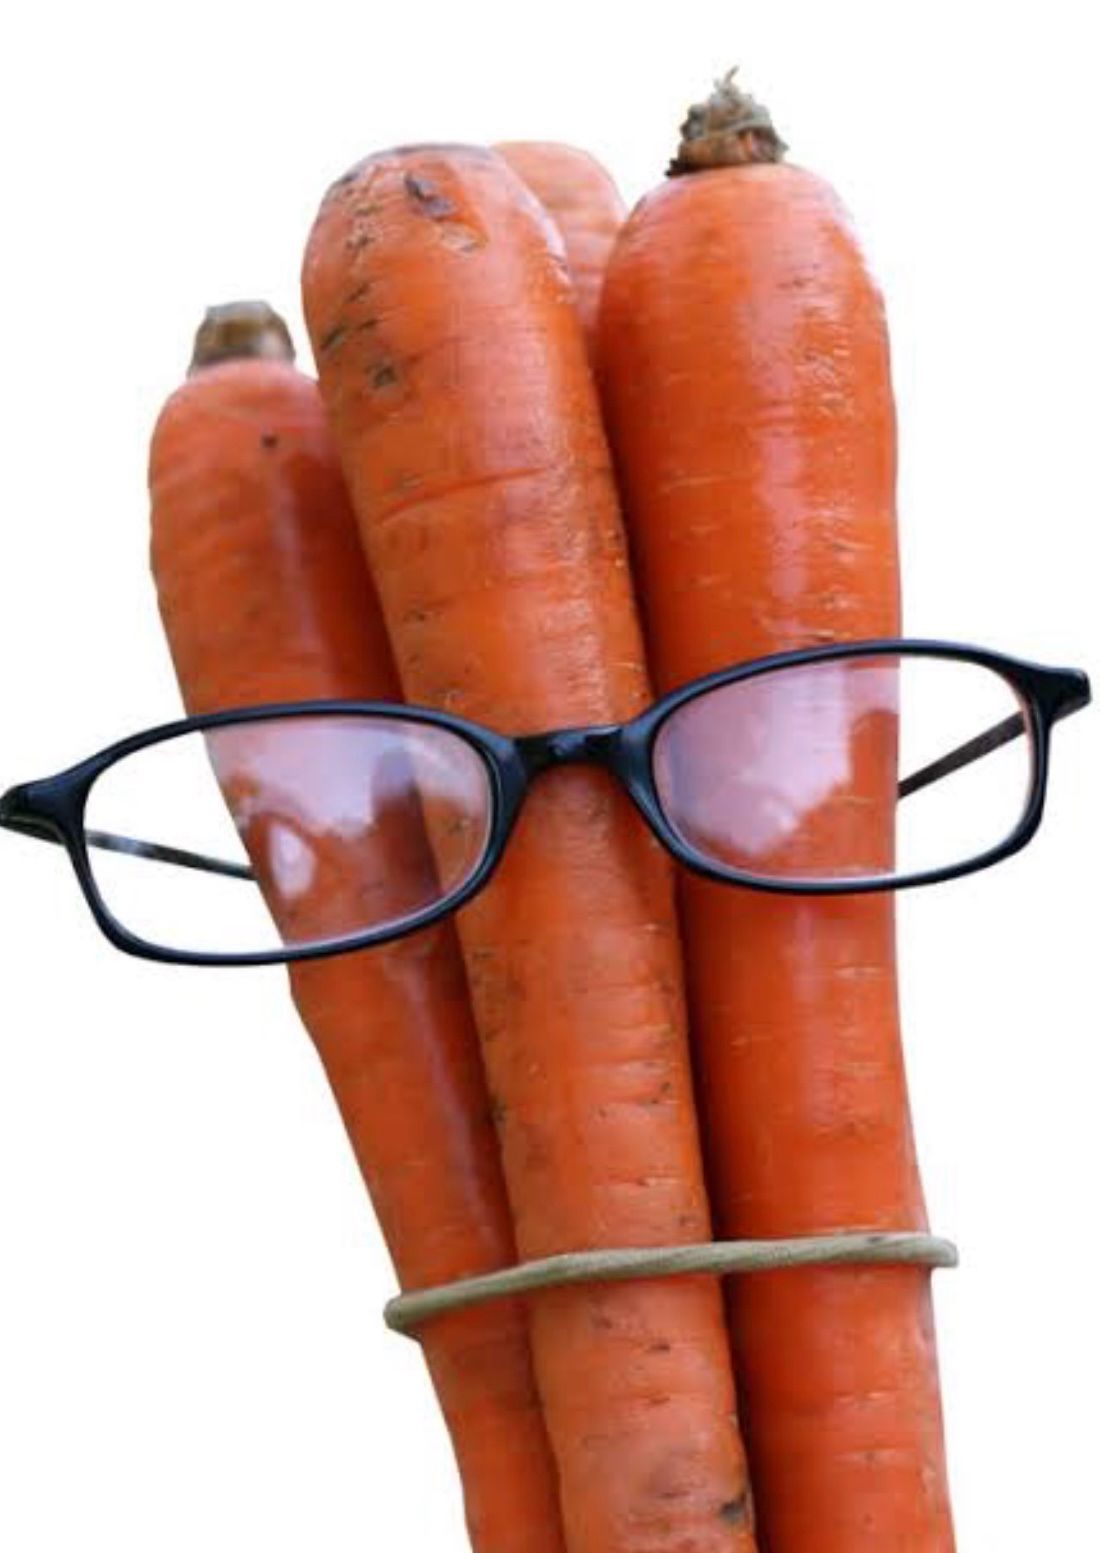 El mito de las zanahorias